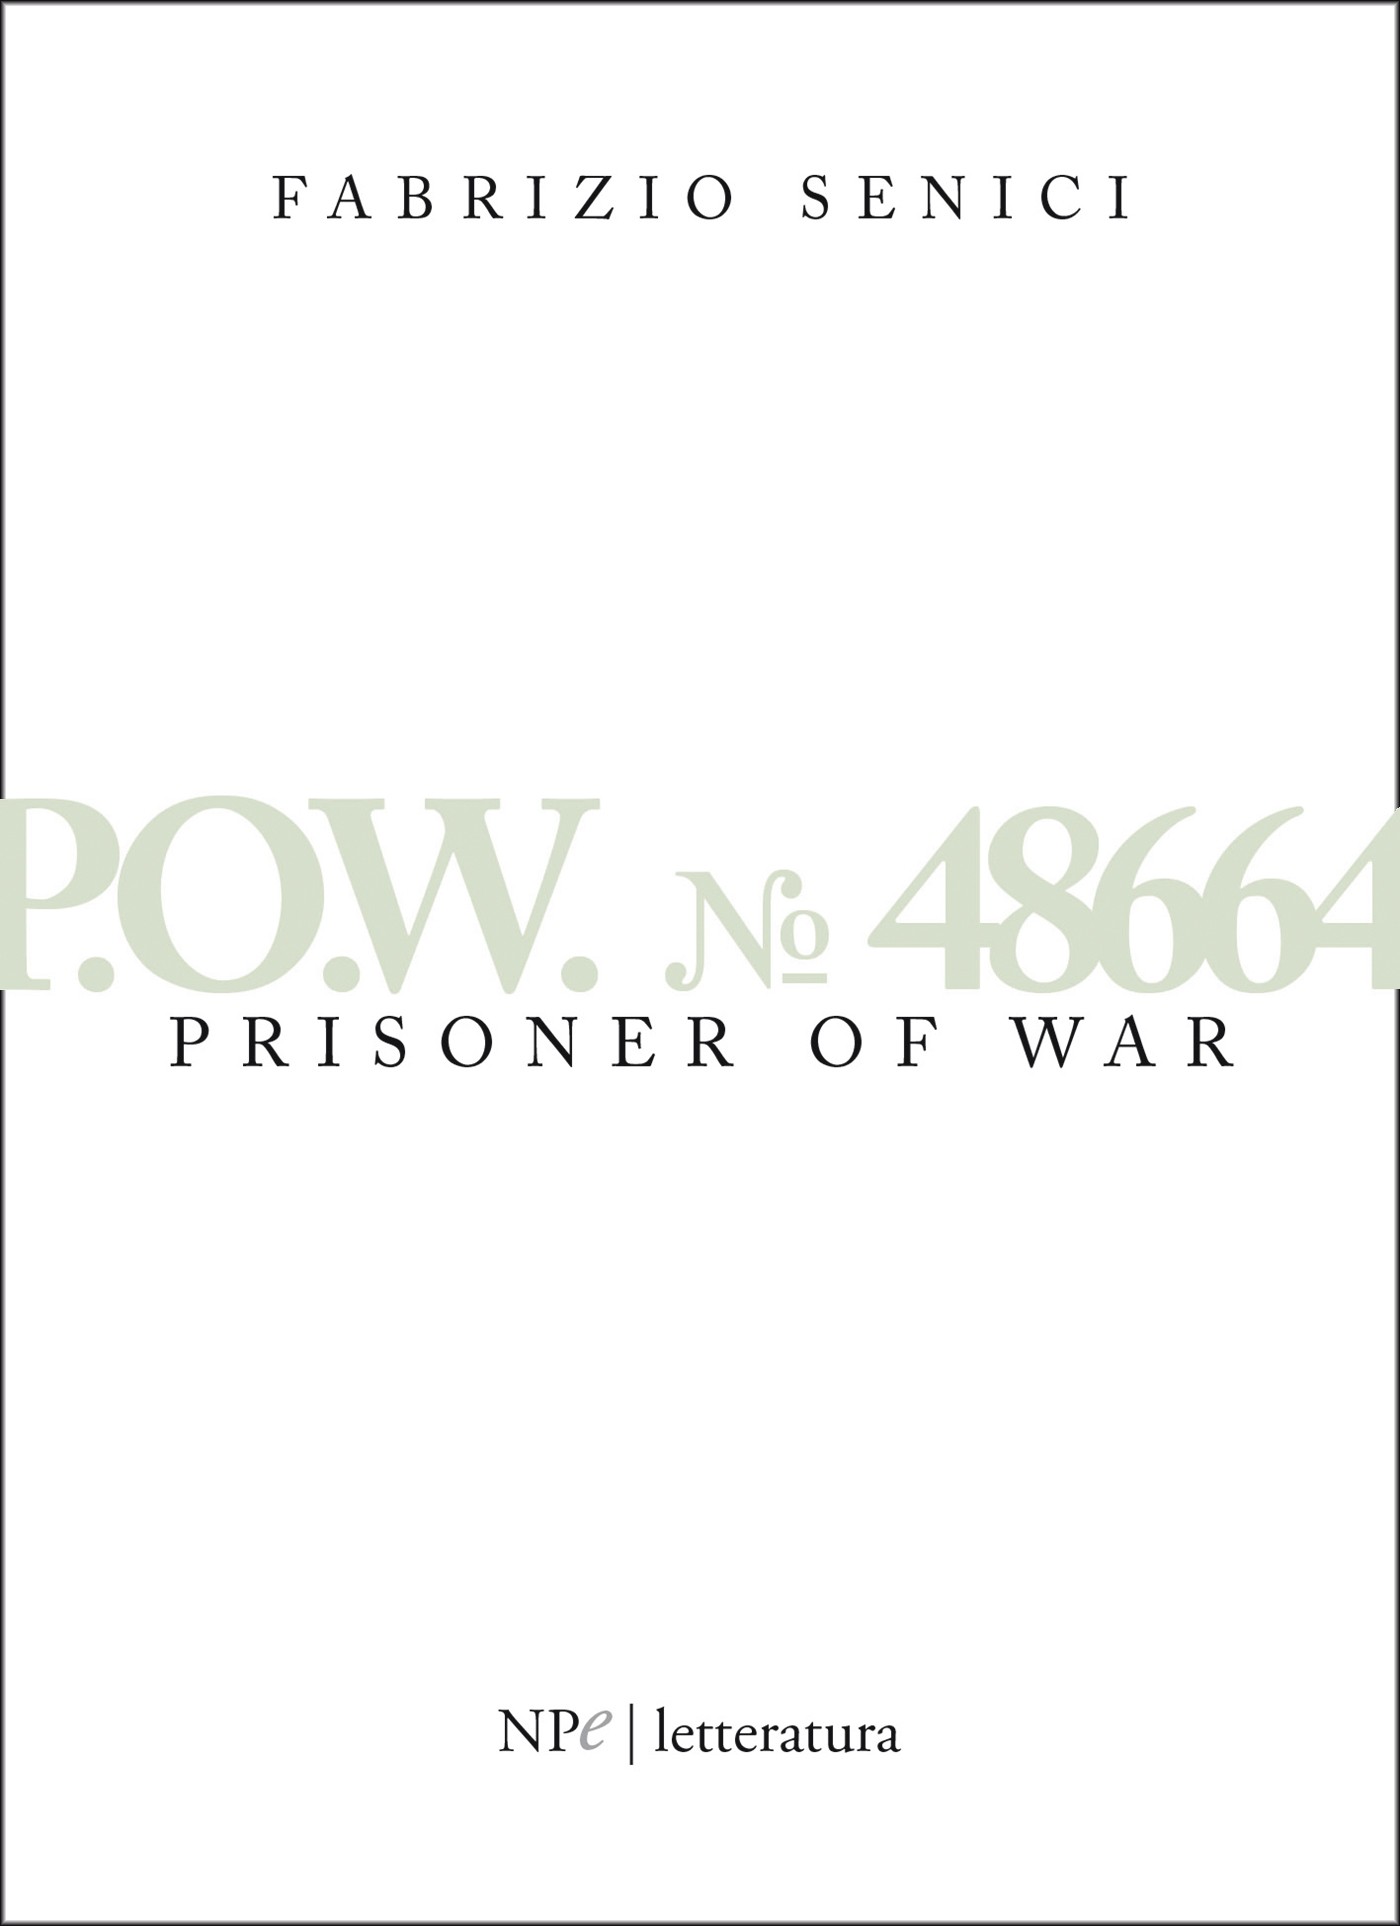 P.O.W. 48664 - Prisoner Of War - Librerie.coop